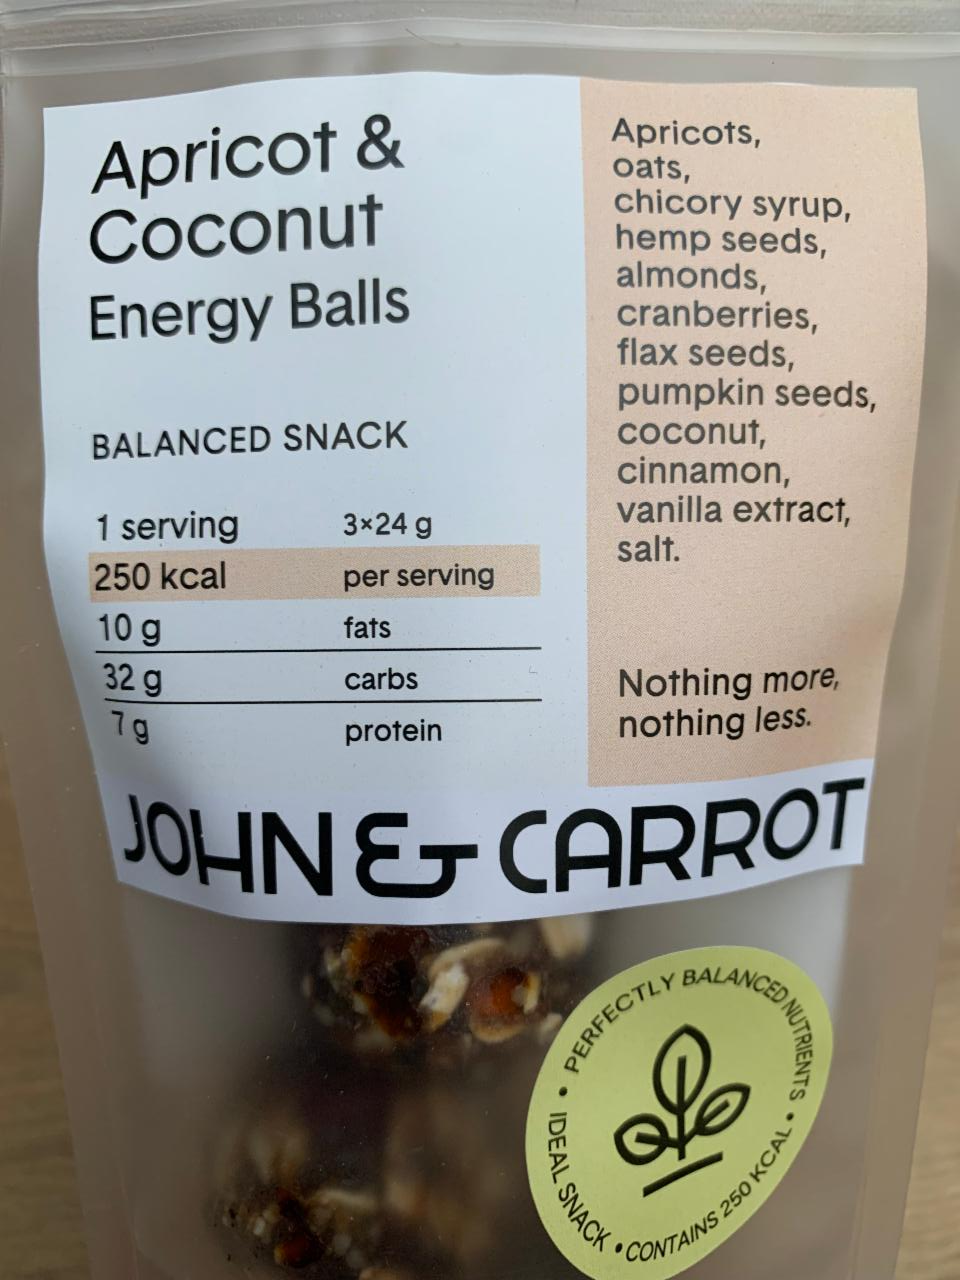 Fotografie - Apricot & Coconut Energy Balls John & Carrot